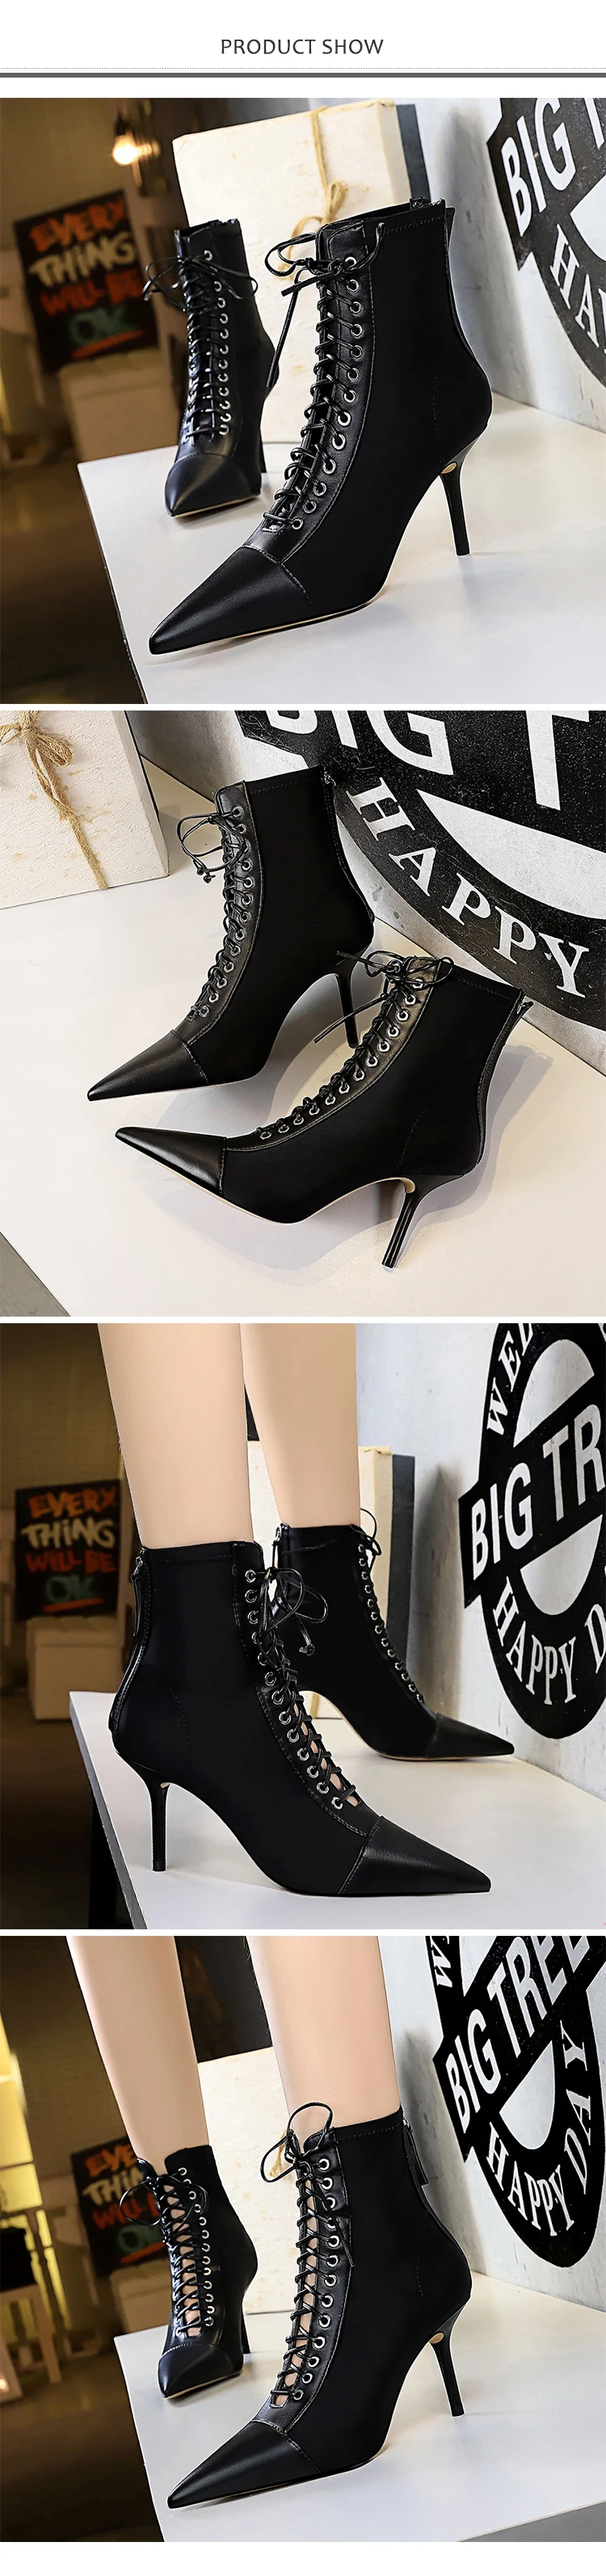 Г. Новые Демисезонные женские ботильоны пикантная женская обувь на высоком тонком каблуке, с острым носком, на шнуровке, на молнии черные ботинки